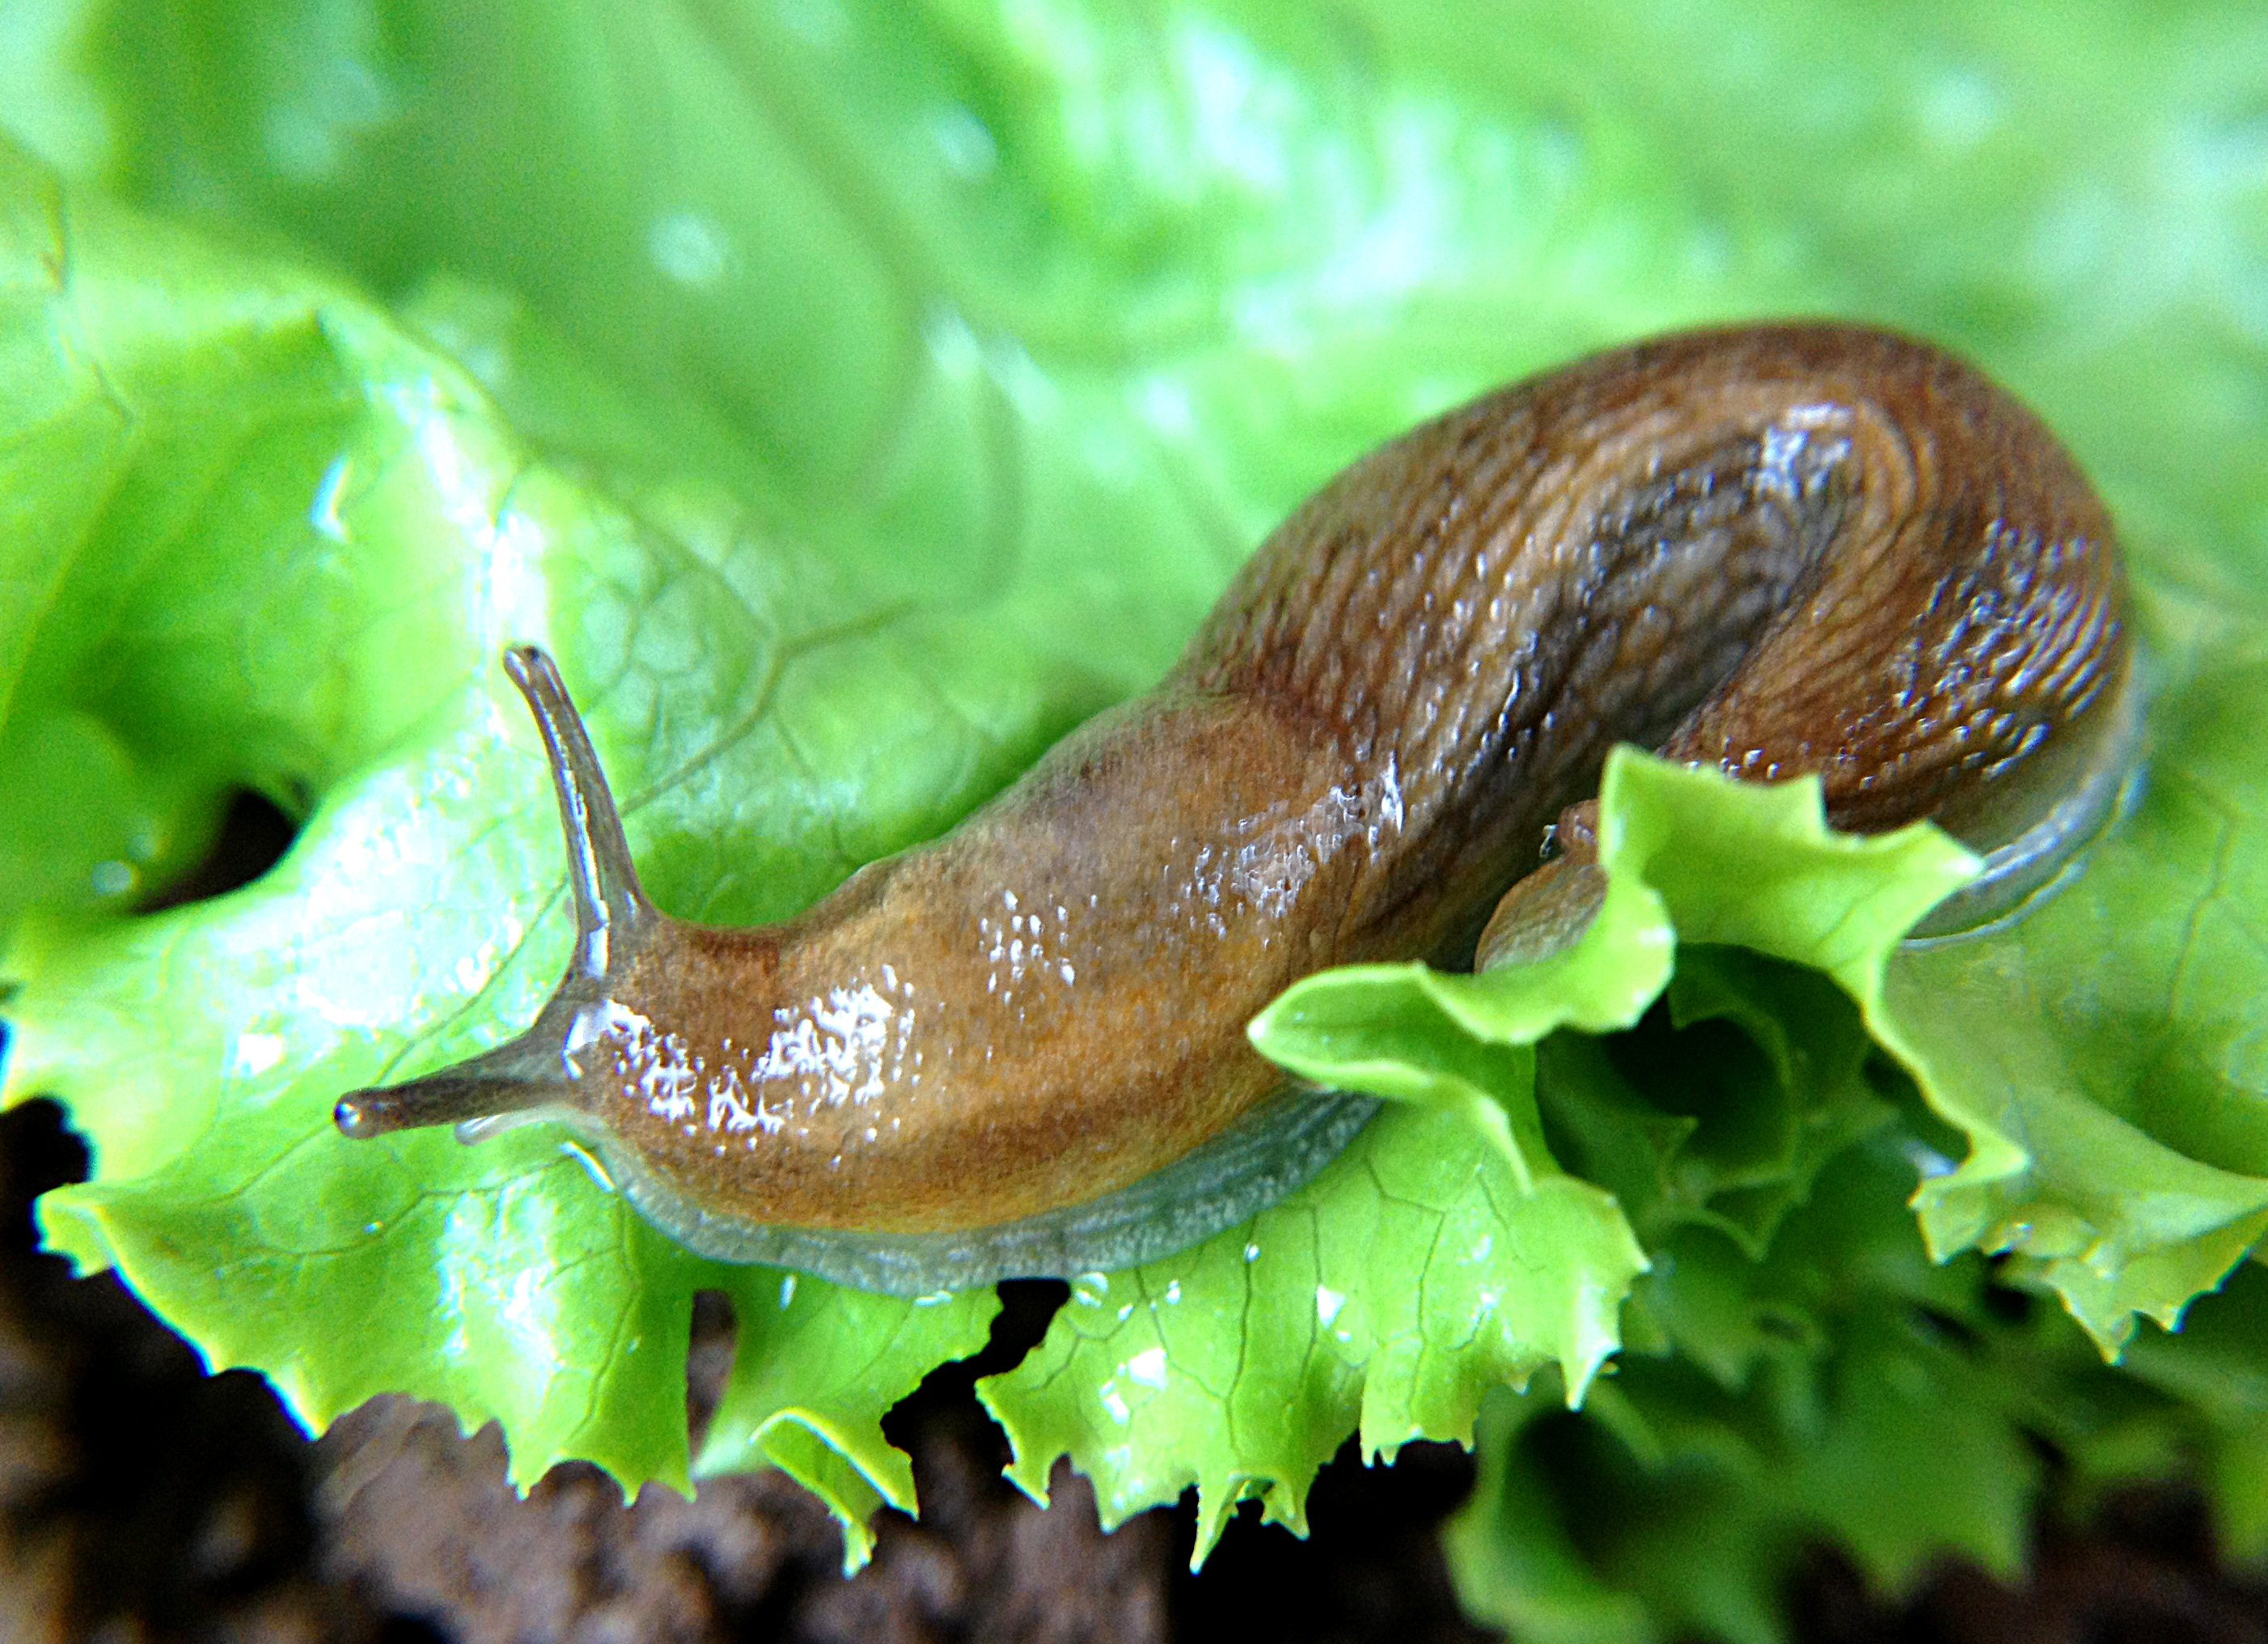 Slugs & Snails on Potatoes